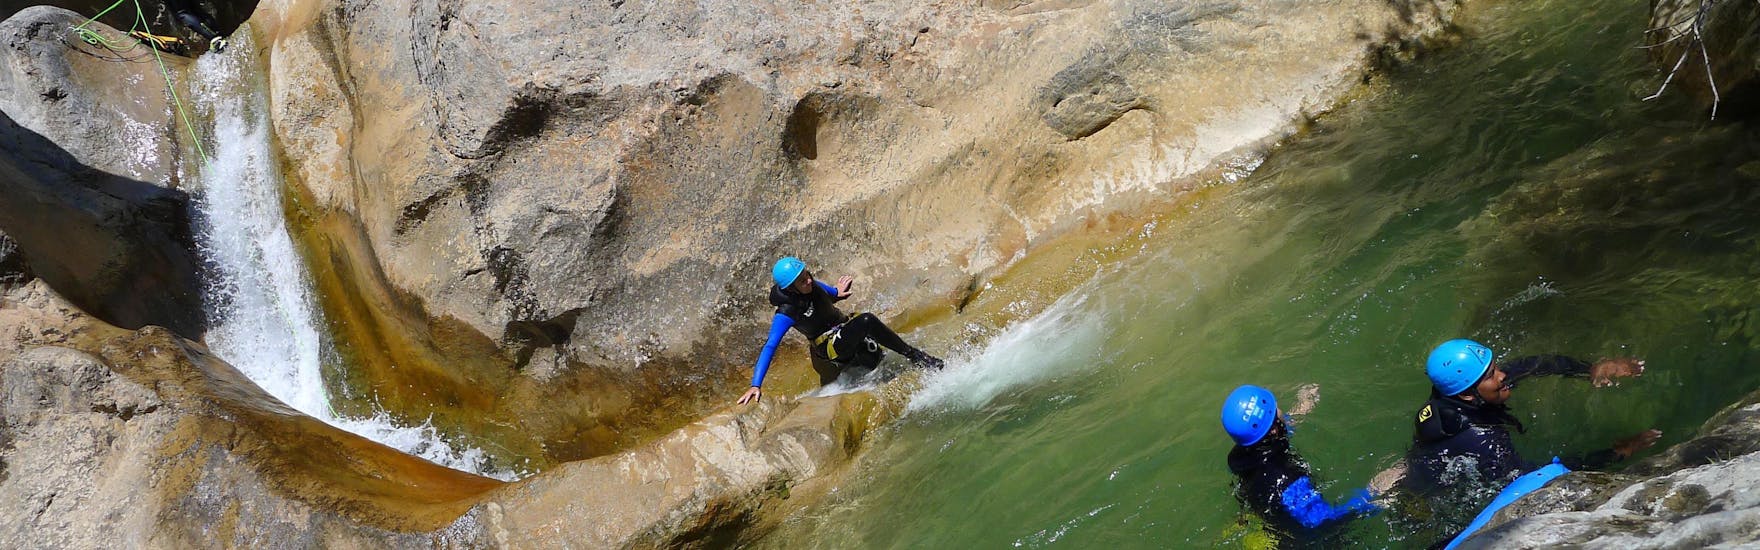 Une fille glisse dans le Canyon d'Oô pendant le Canyoning technique avec H2O vives.